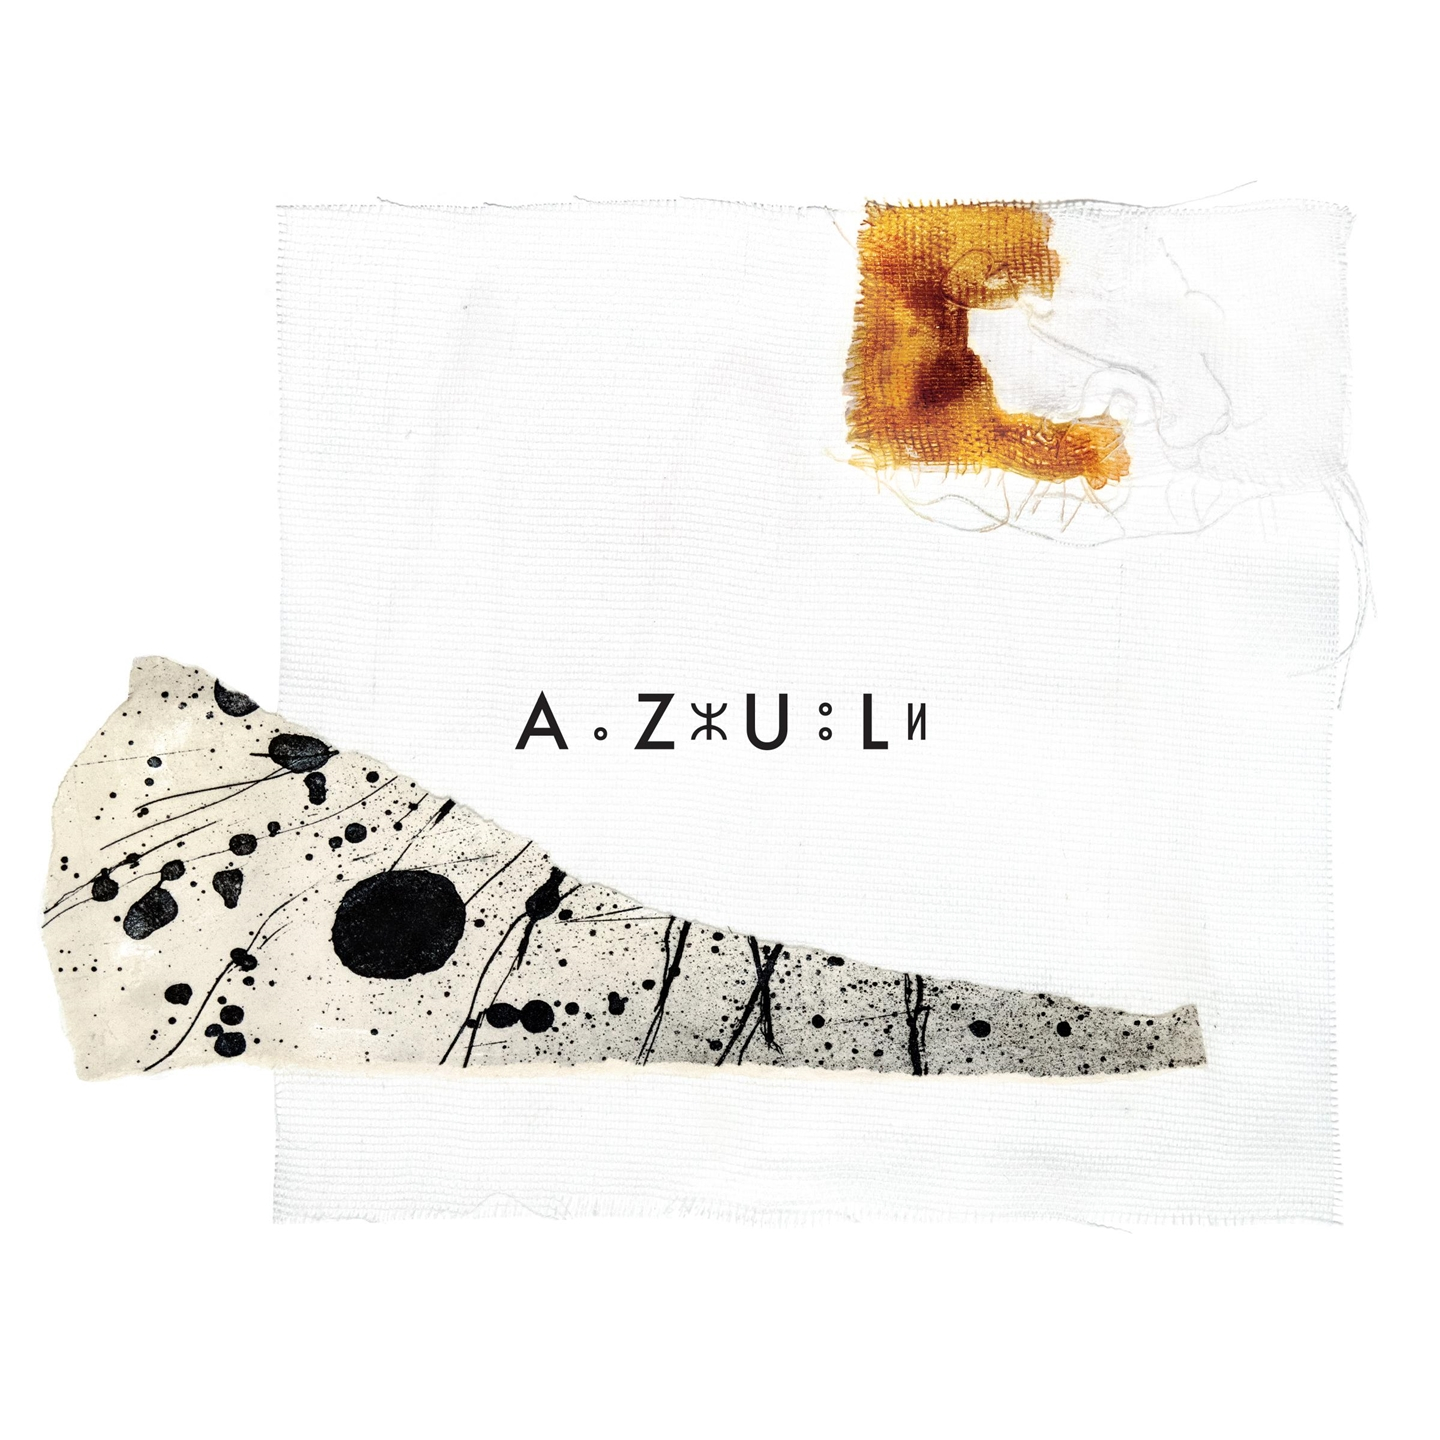 AZUL [EP]